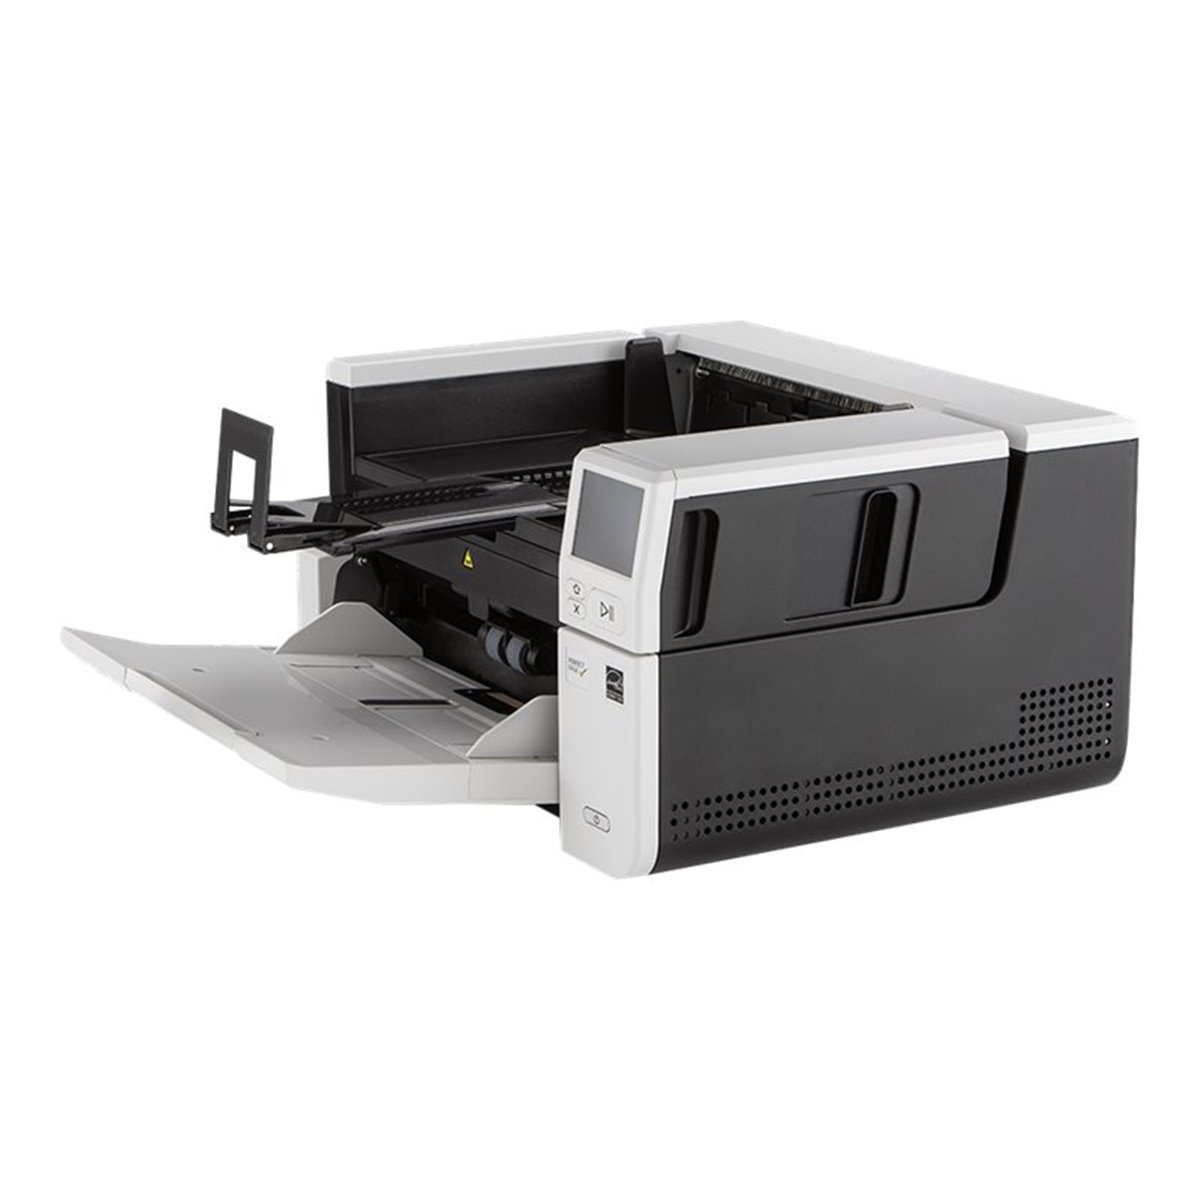 Kodak Scanner S3100 A3 Dokumentenscanner - Document Scanners - A3